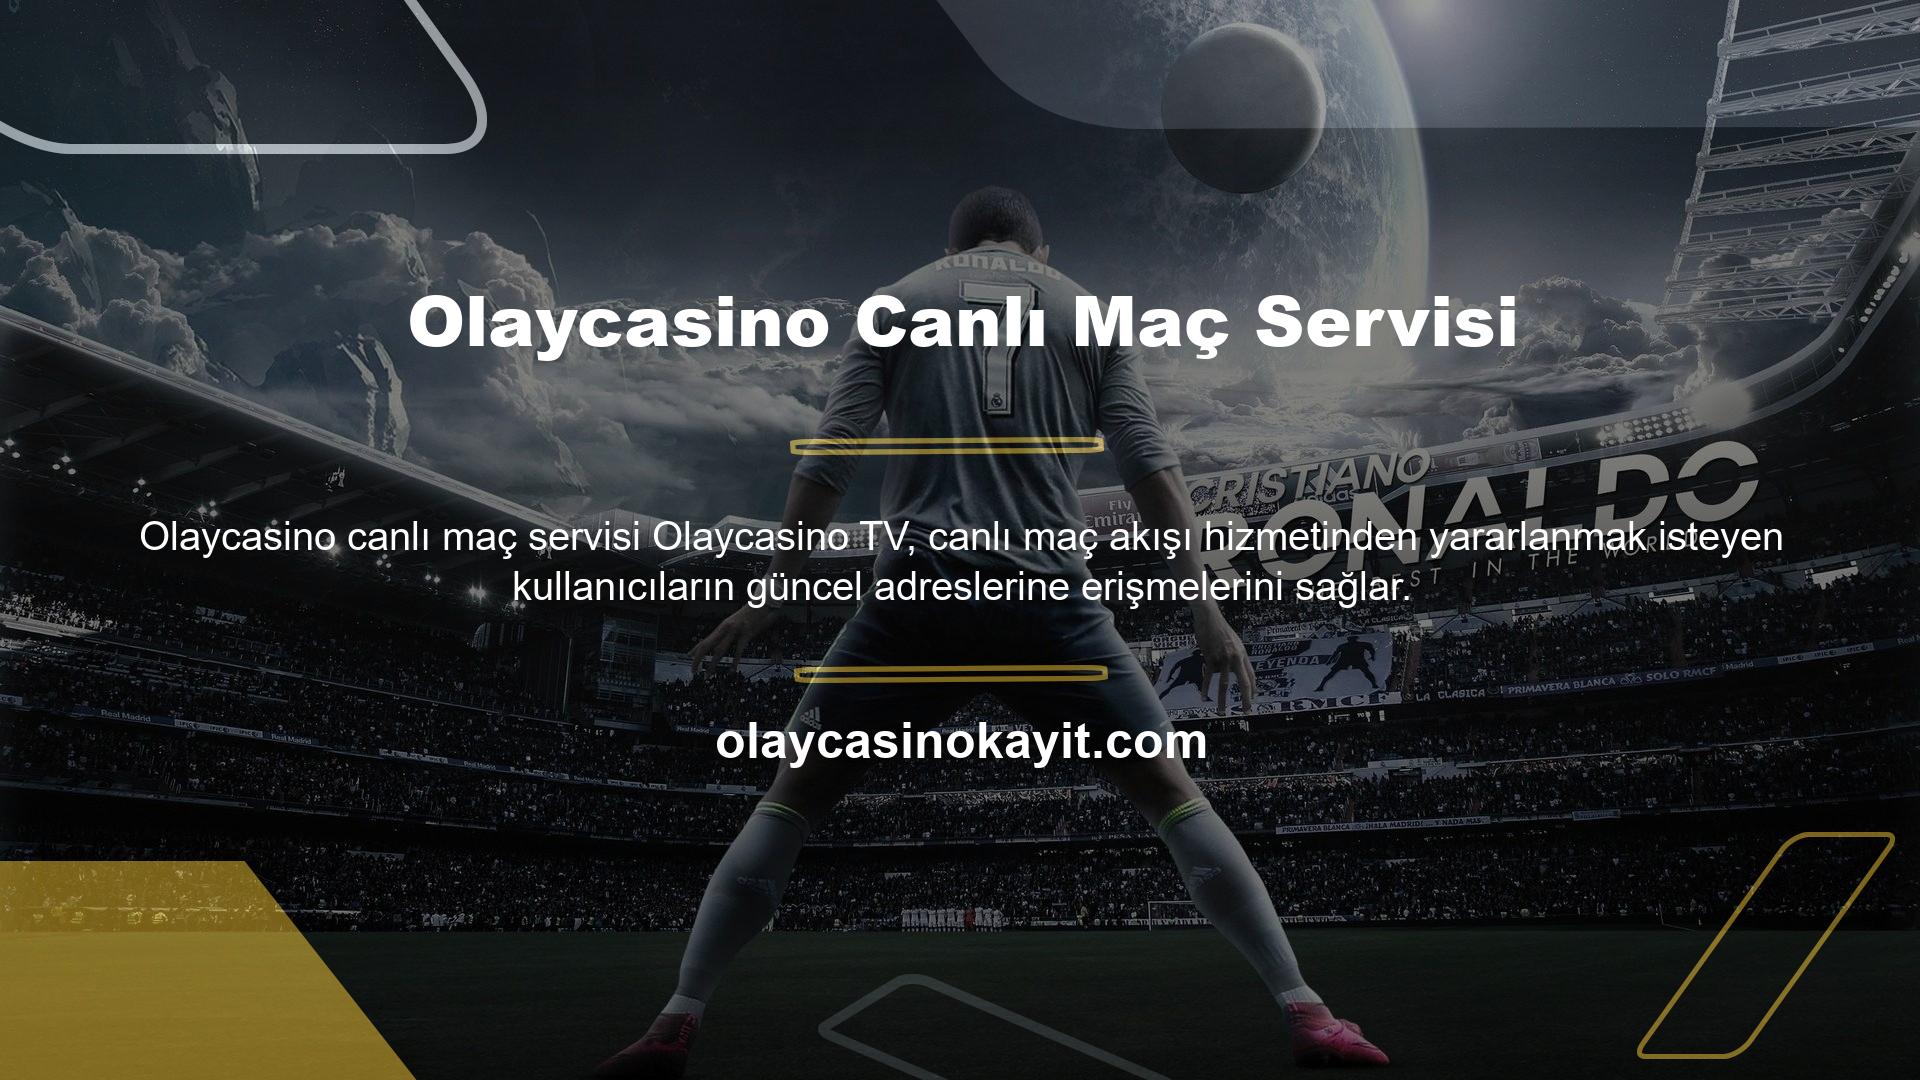 Olaycasino Canlı Maç Servisi Türkiye'ye özel tüm servislerin güncel adresi vardır